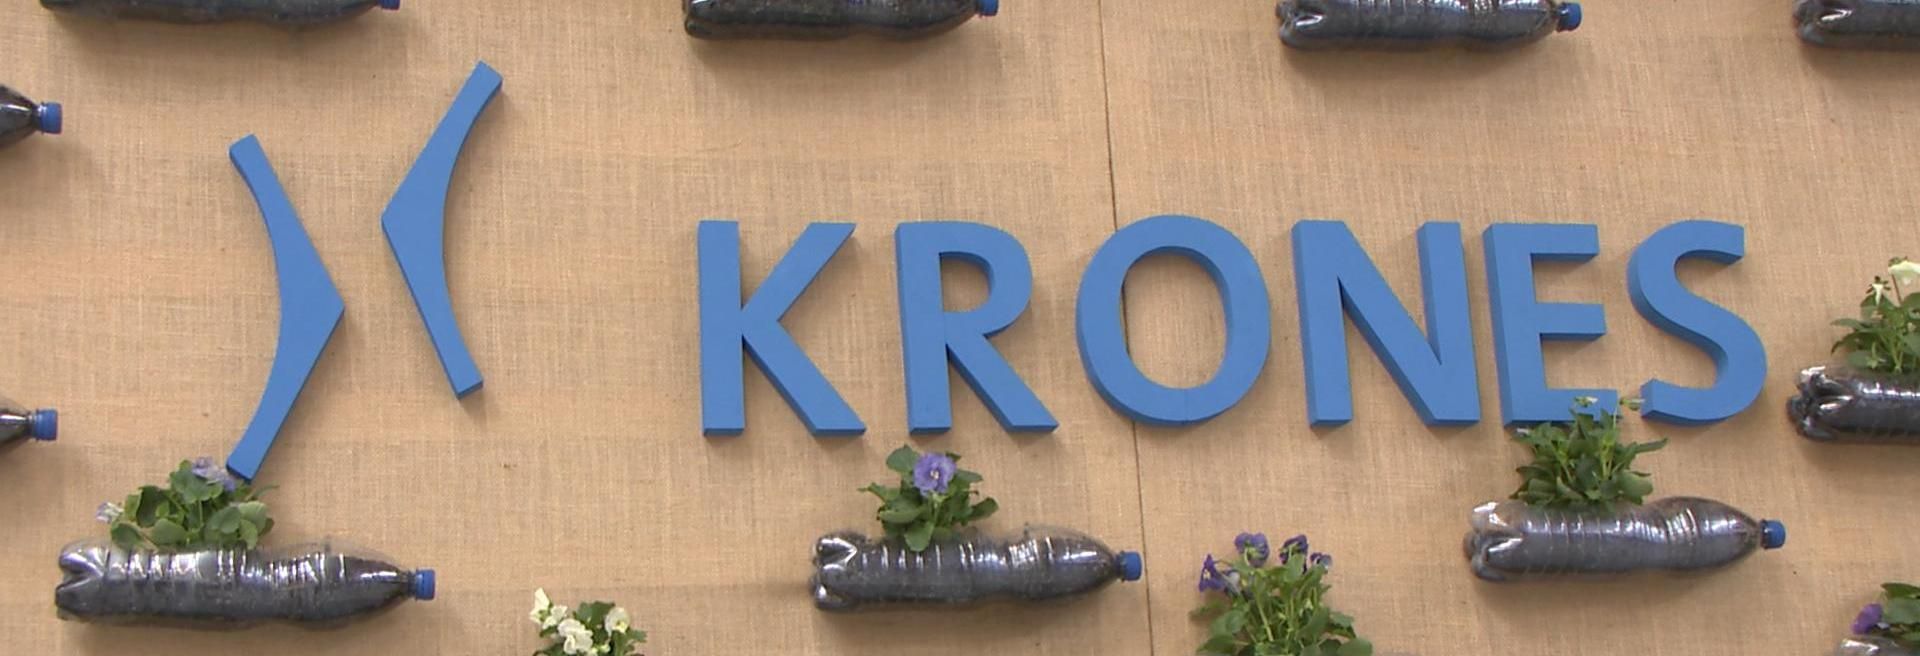 Elkészült a Krones első Németországon kívüli európai üzeme Debrecenben - VIDEÓRIPORT